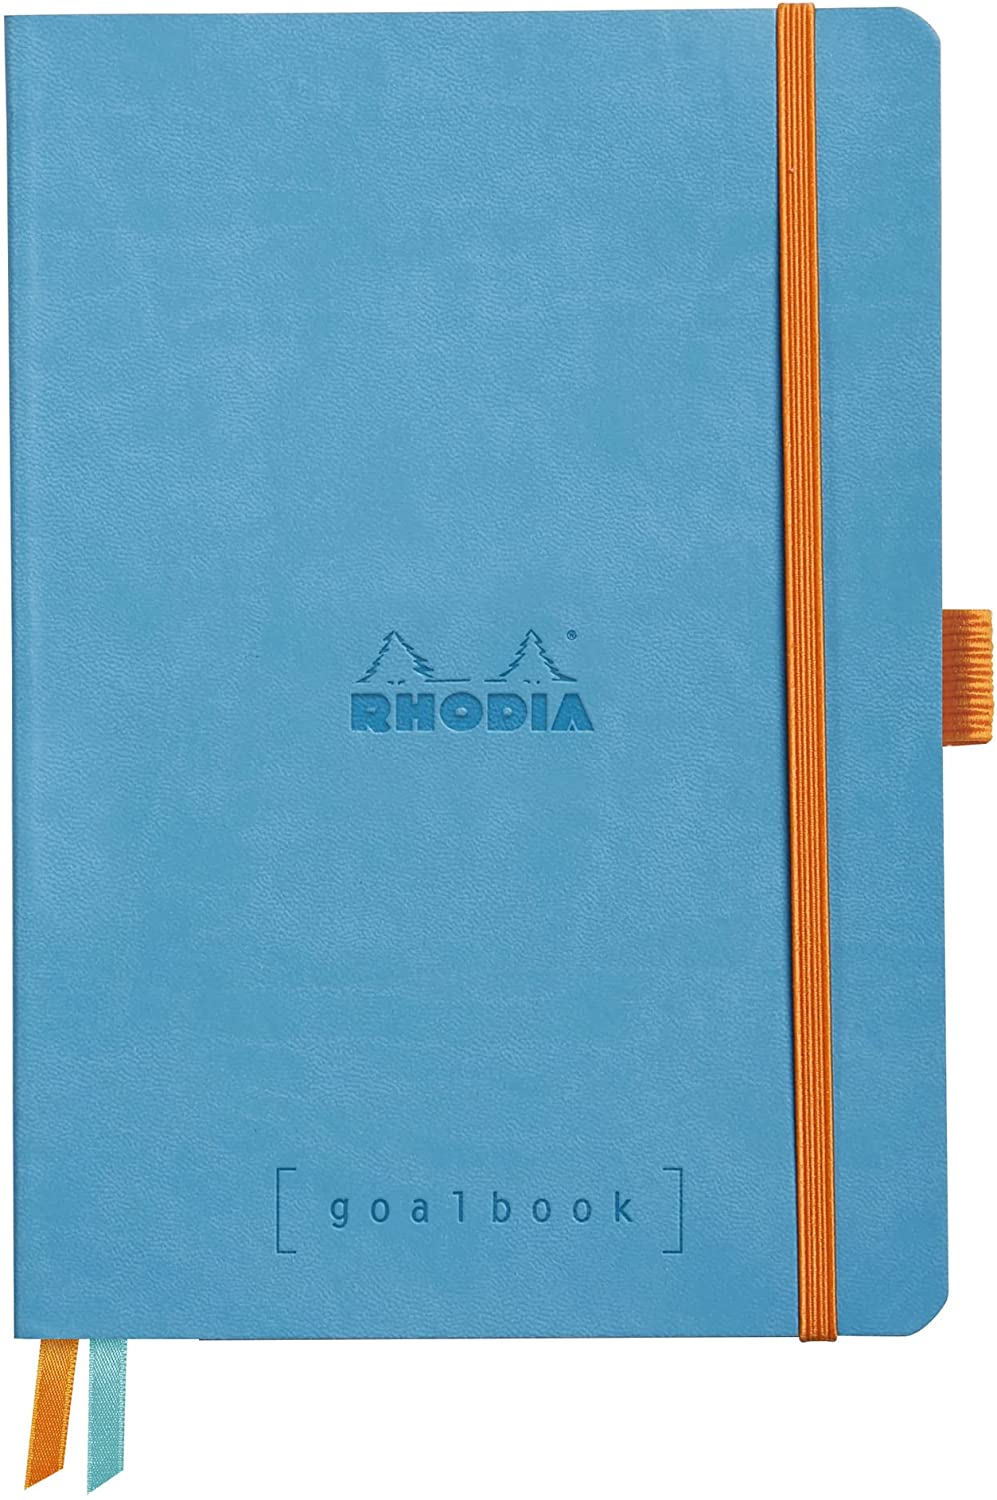 Rhodia A5 Goalbook Dot Journal 5 x 8